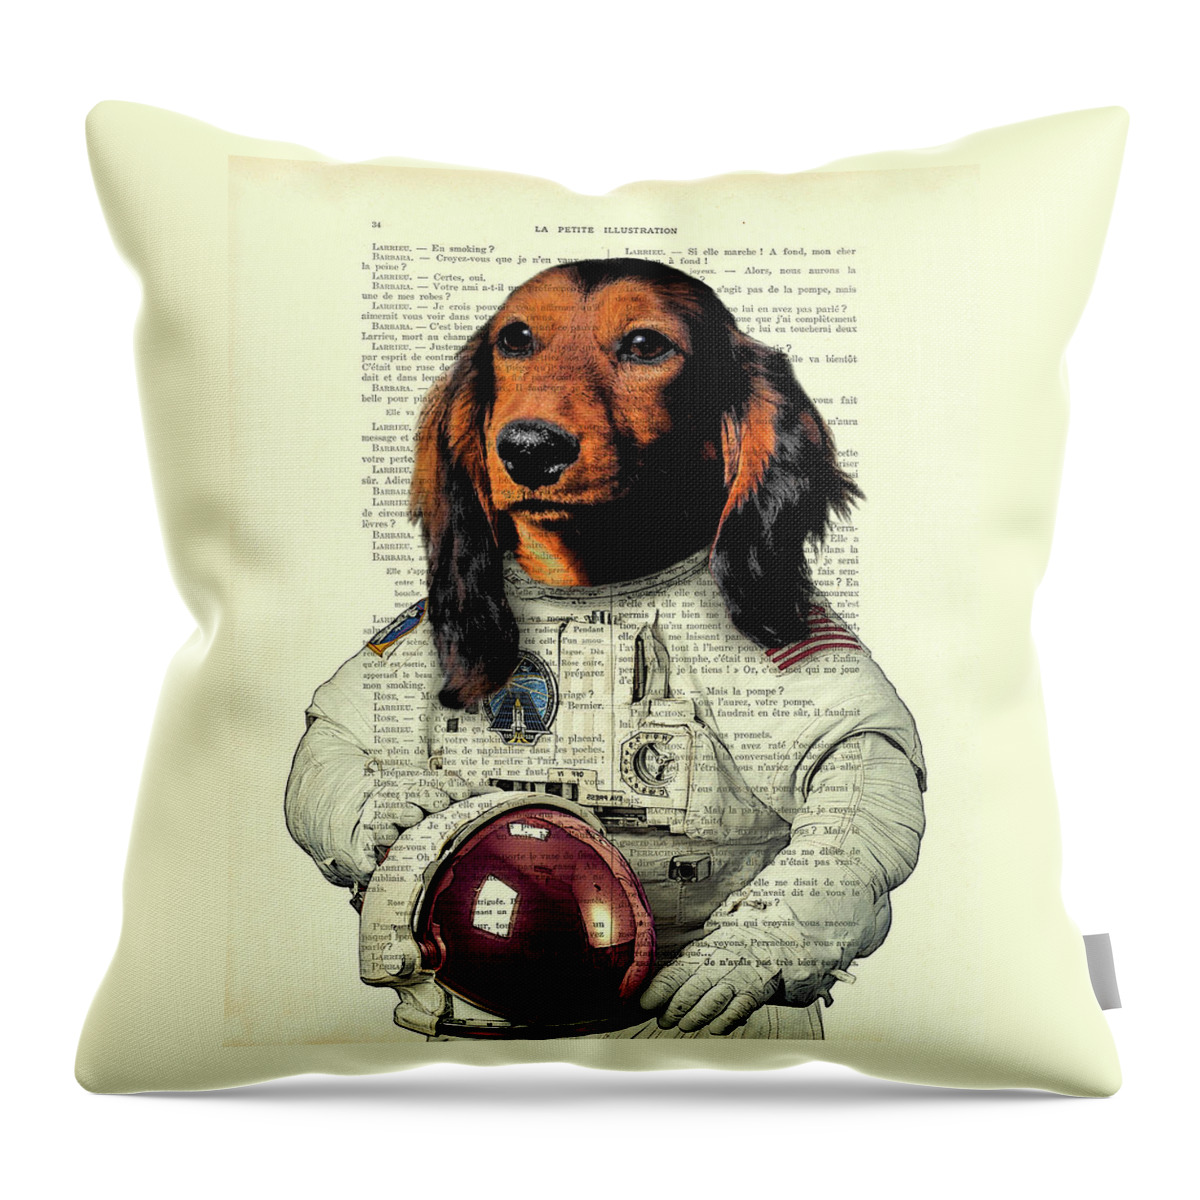 Dachshund Throw Pillow featuring the digital art Dachshund astronaut art print by Madame Memento